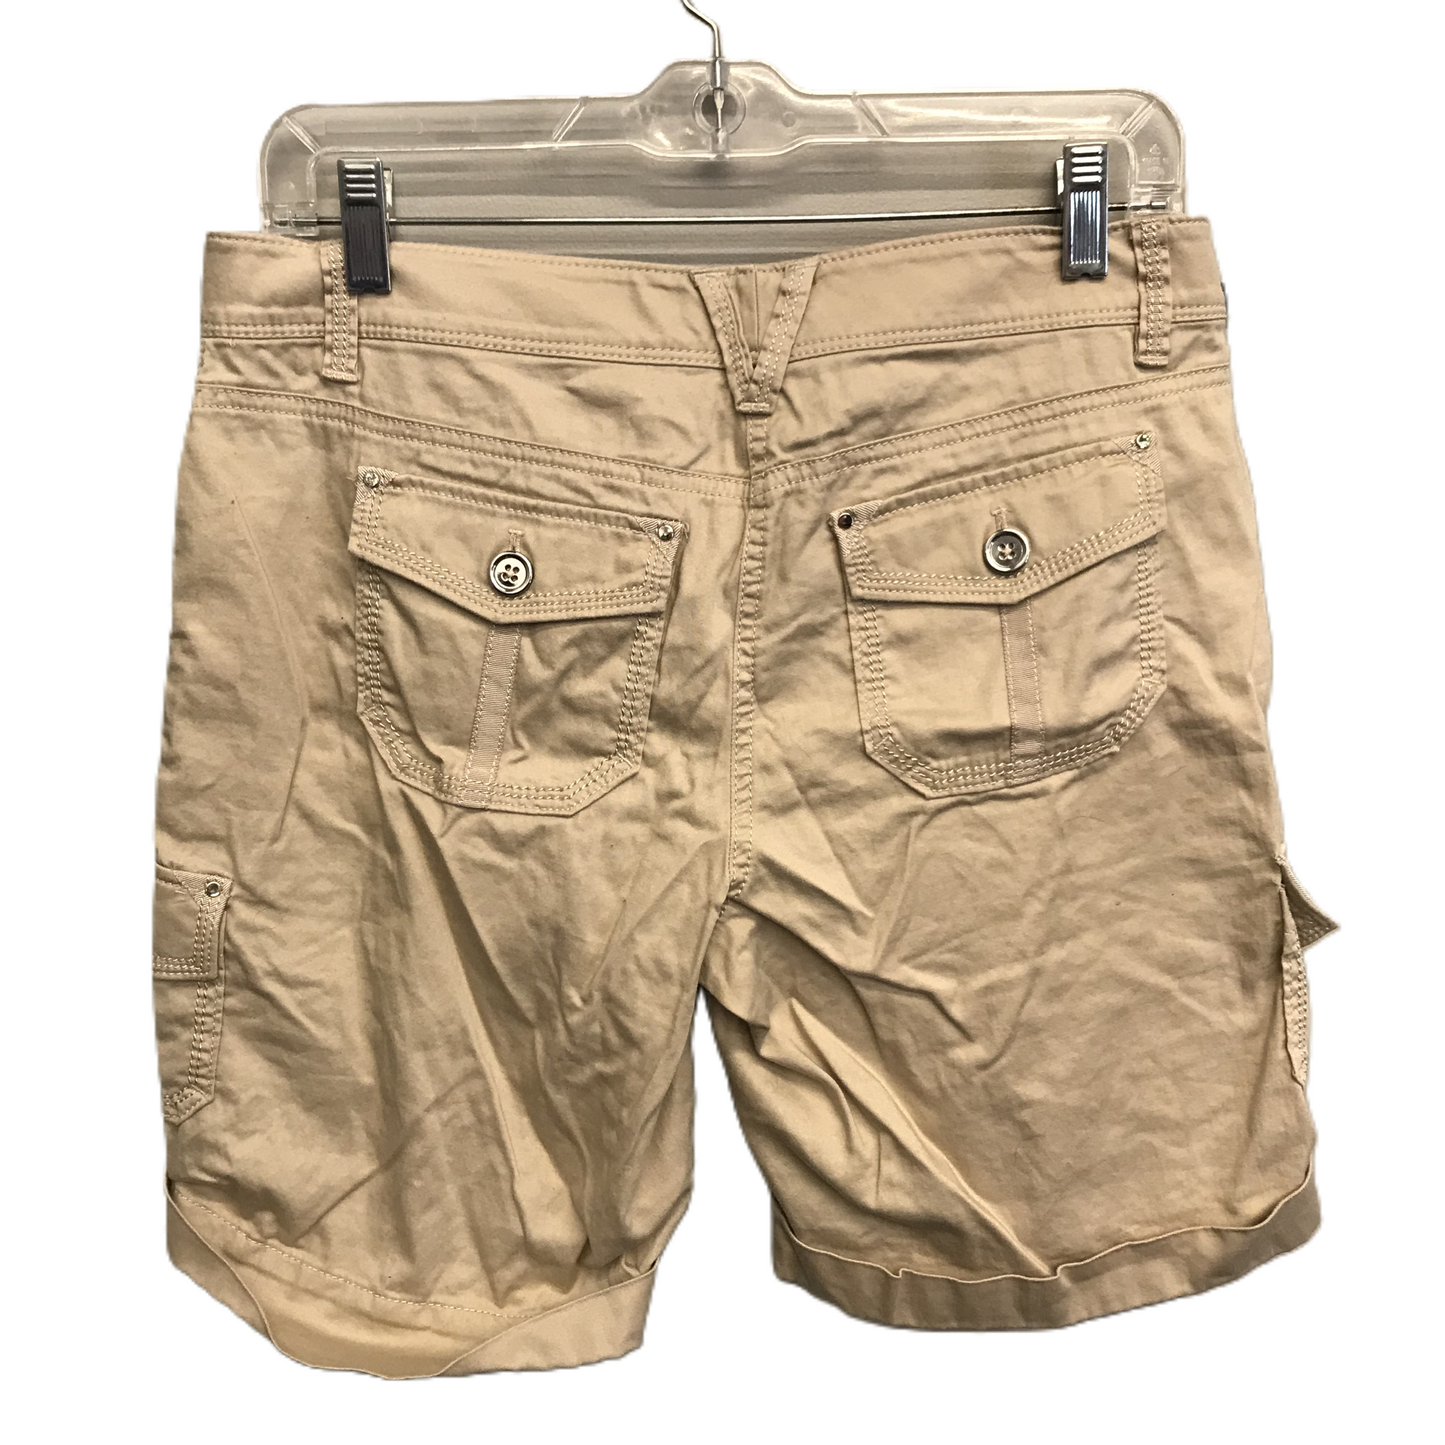 Tan Shorts By White House Black Market, Size: 4